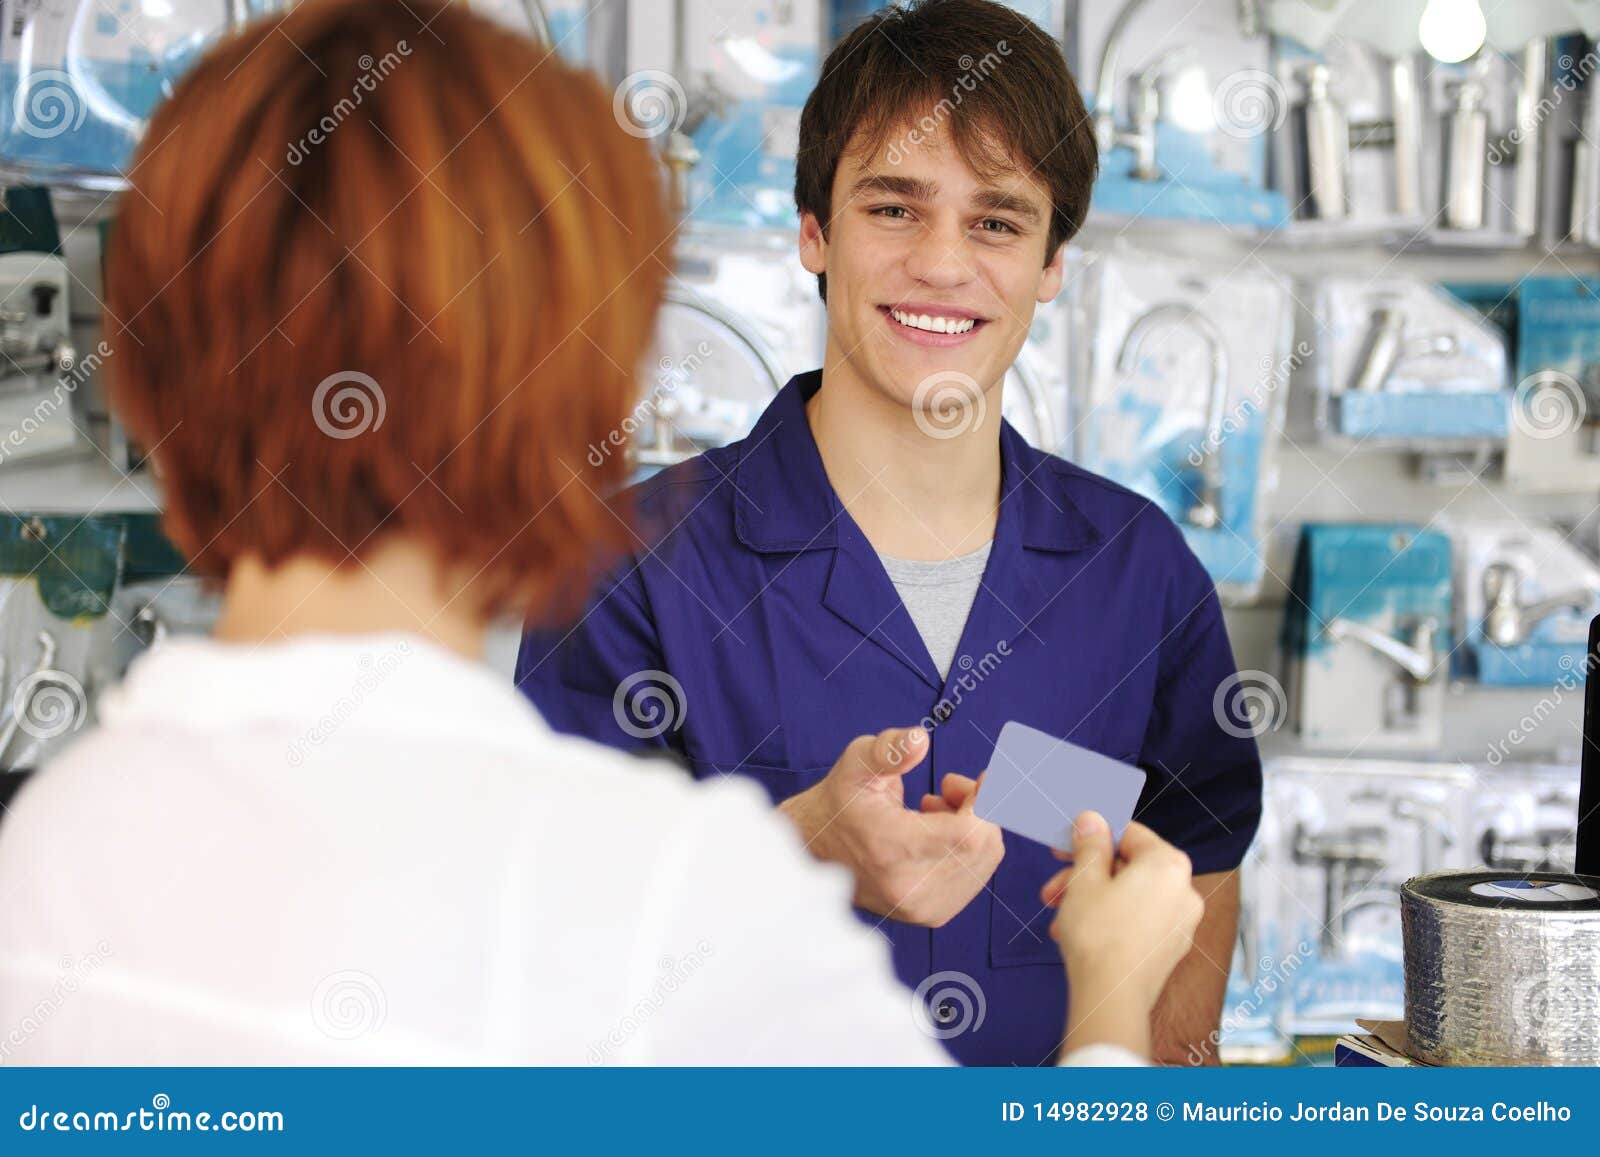 sales clerk receiving credit card